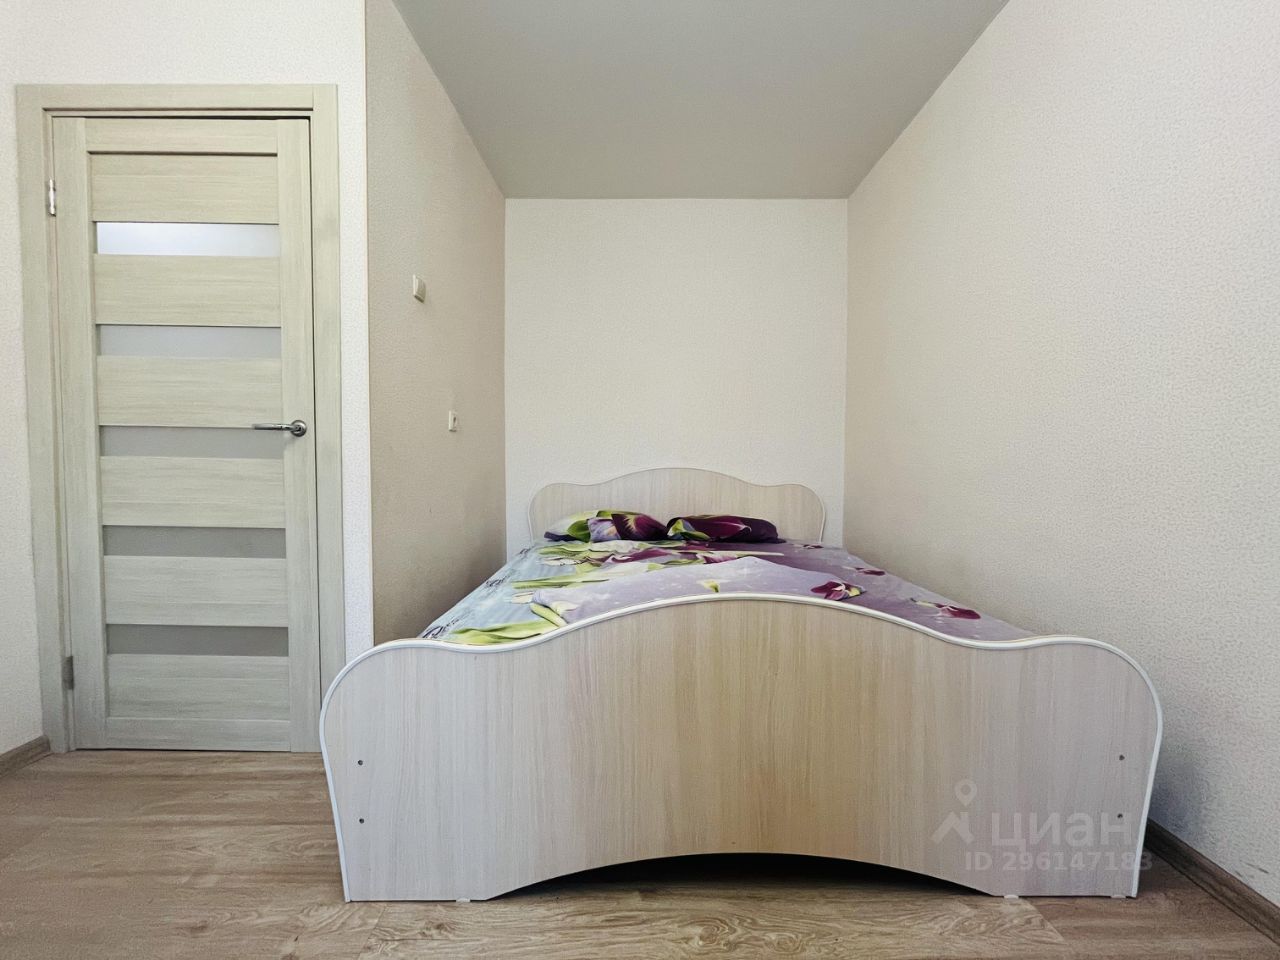 Уютная однокомнатная квартира в Екатеринбурге. Светлая комната с новой мебелью, 9 этаж, общая площадь 38 кв.м.